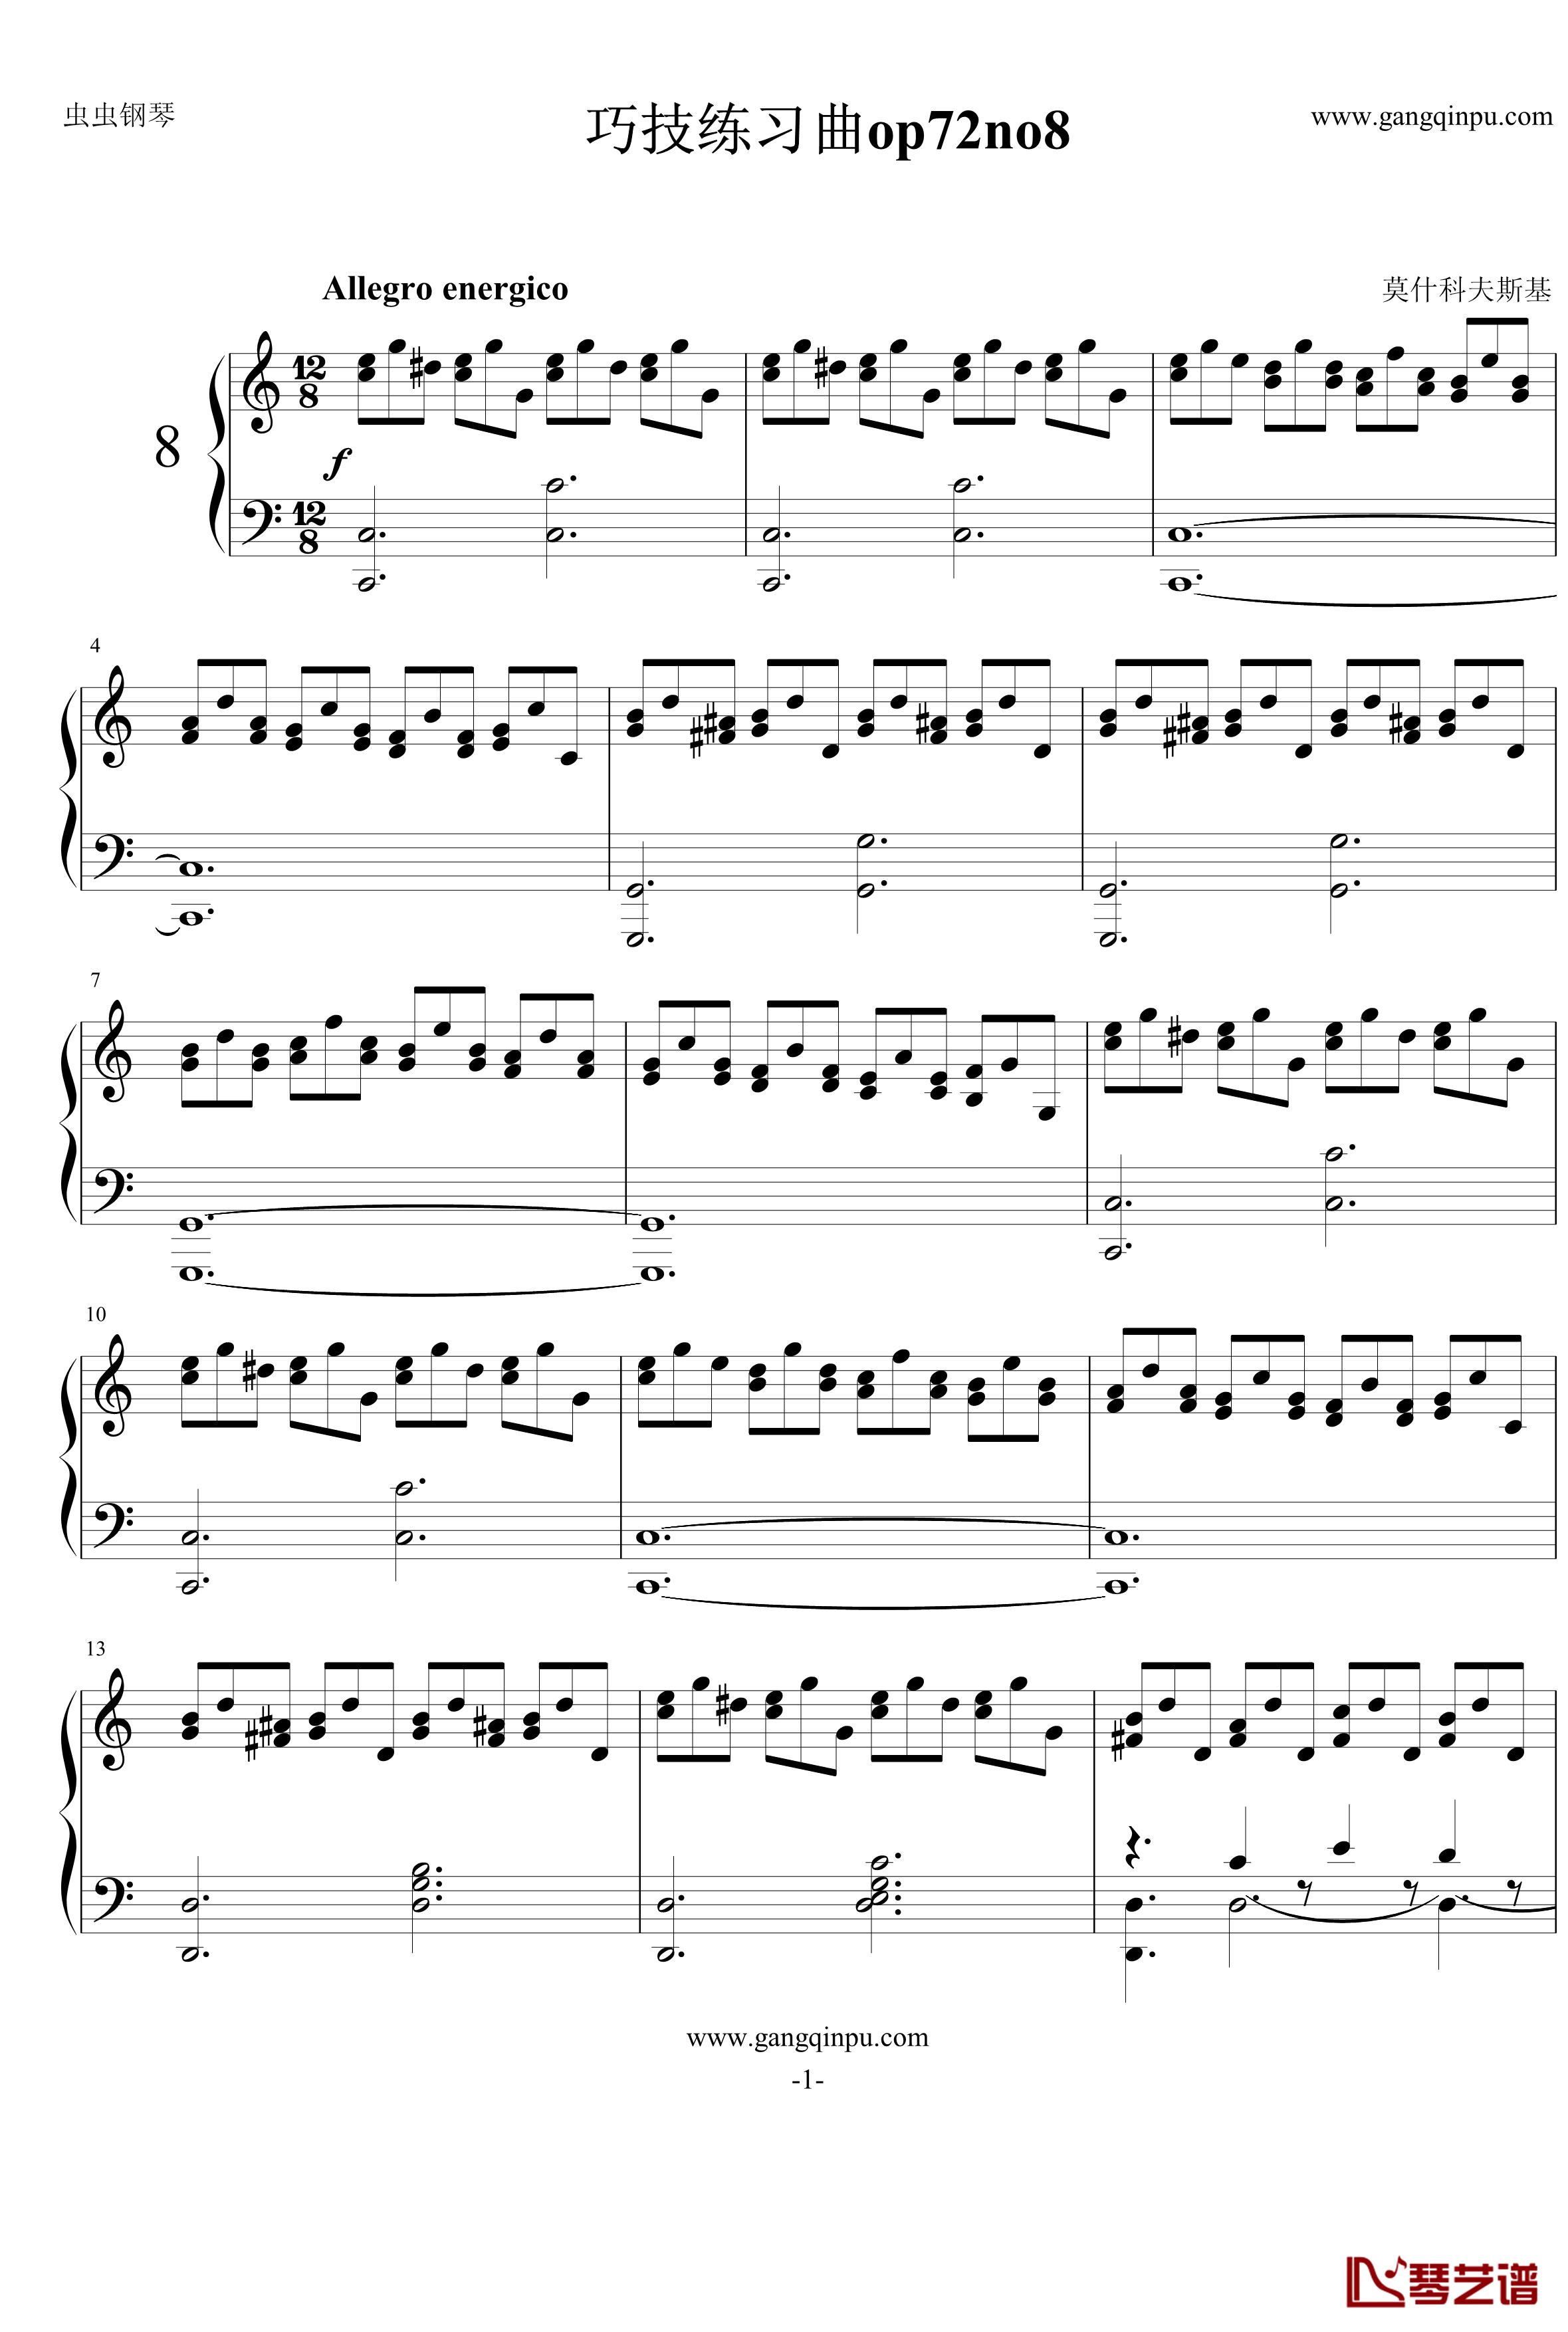 巧技练习曲钢琴谱-莫什科夫斯基-Moszkowski1